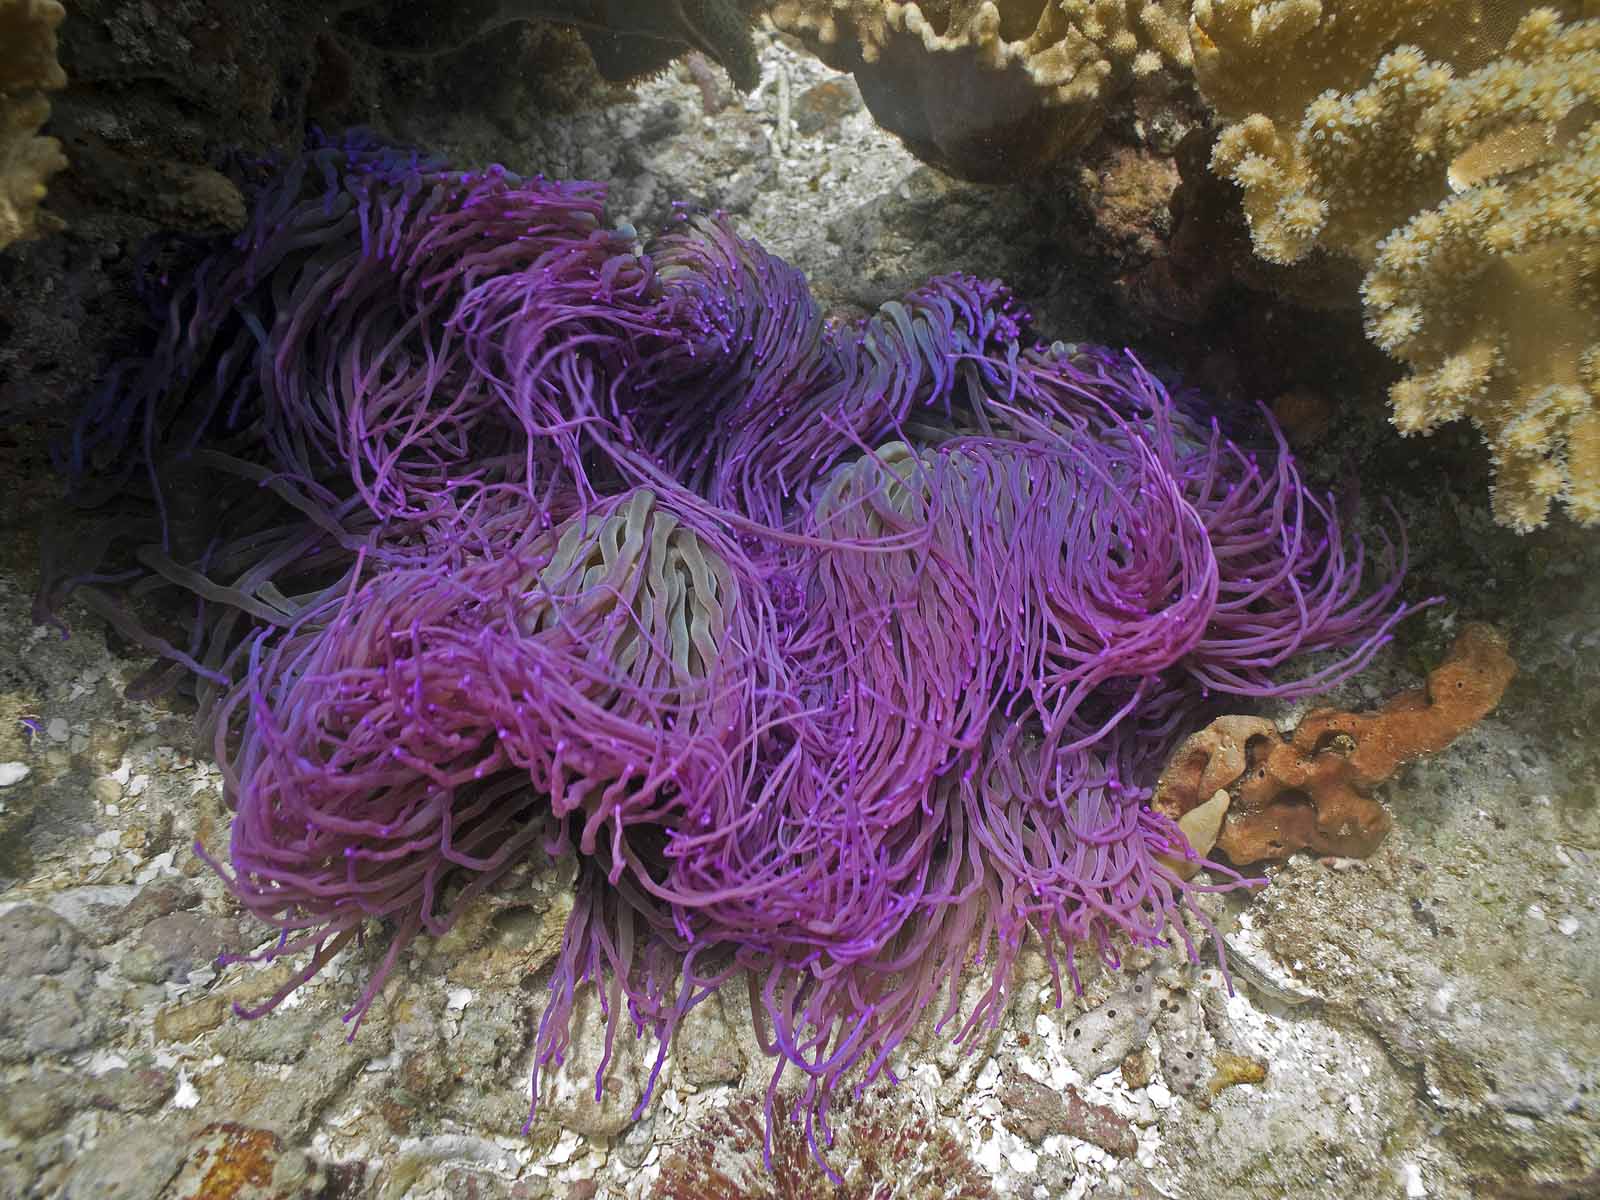 A beautiful purple anemone